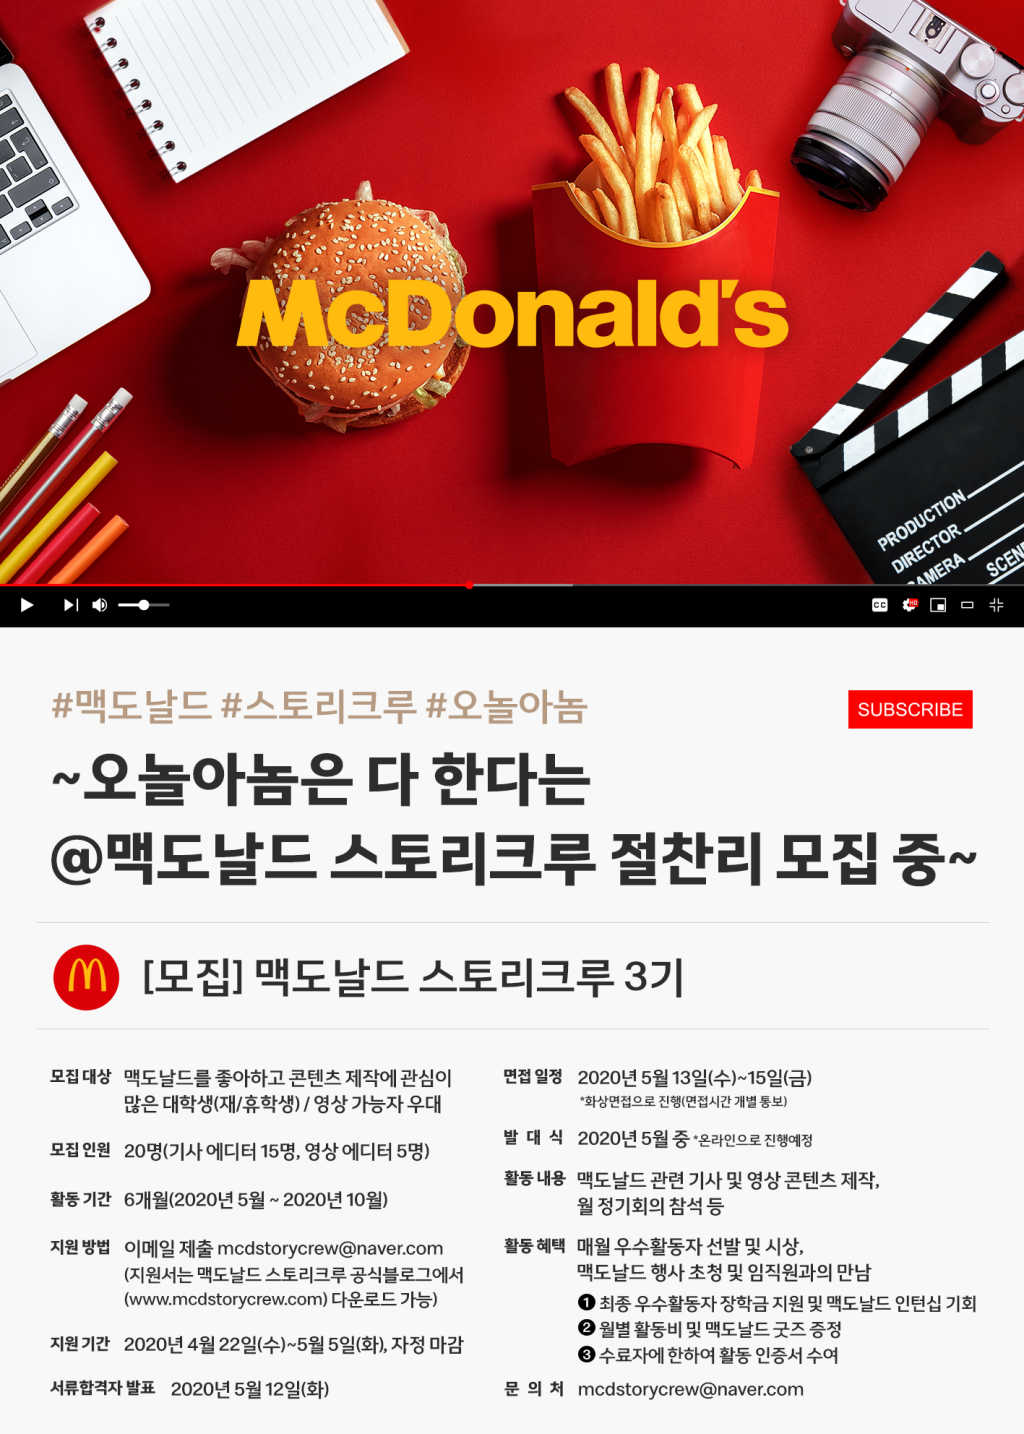 맥도날드 스토리크루 3기